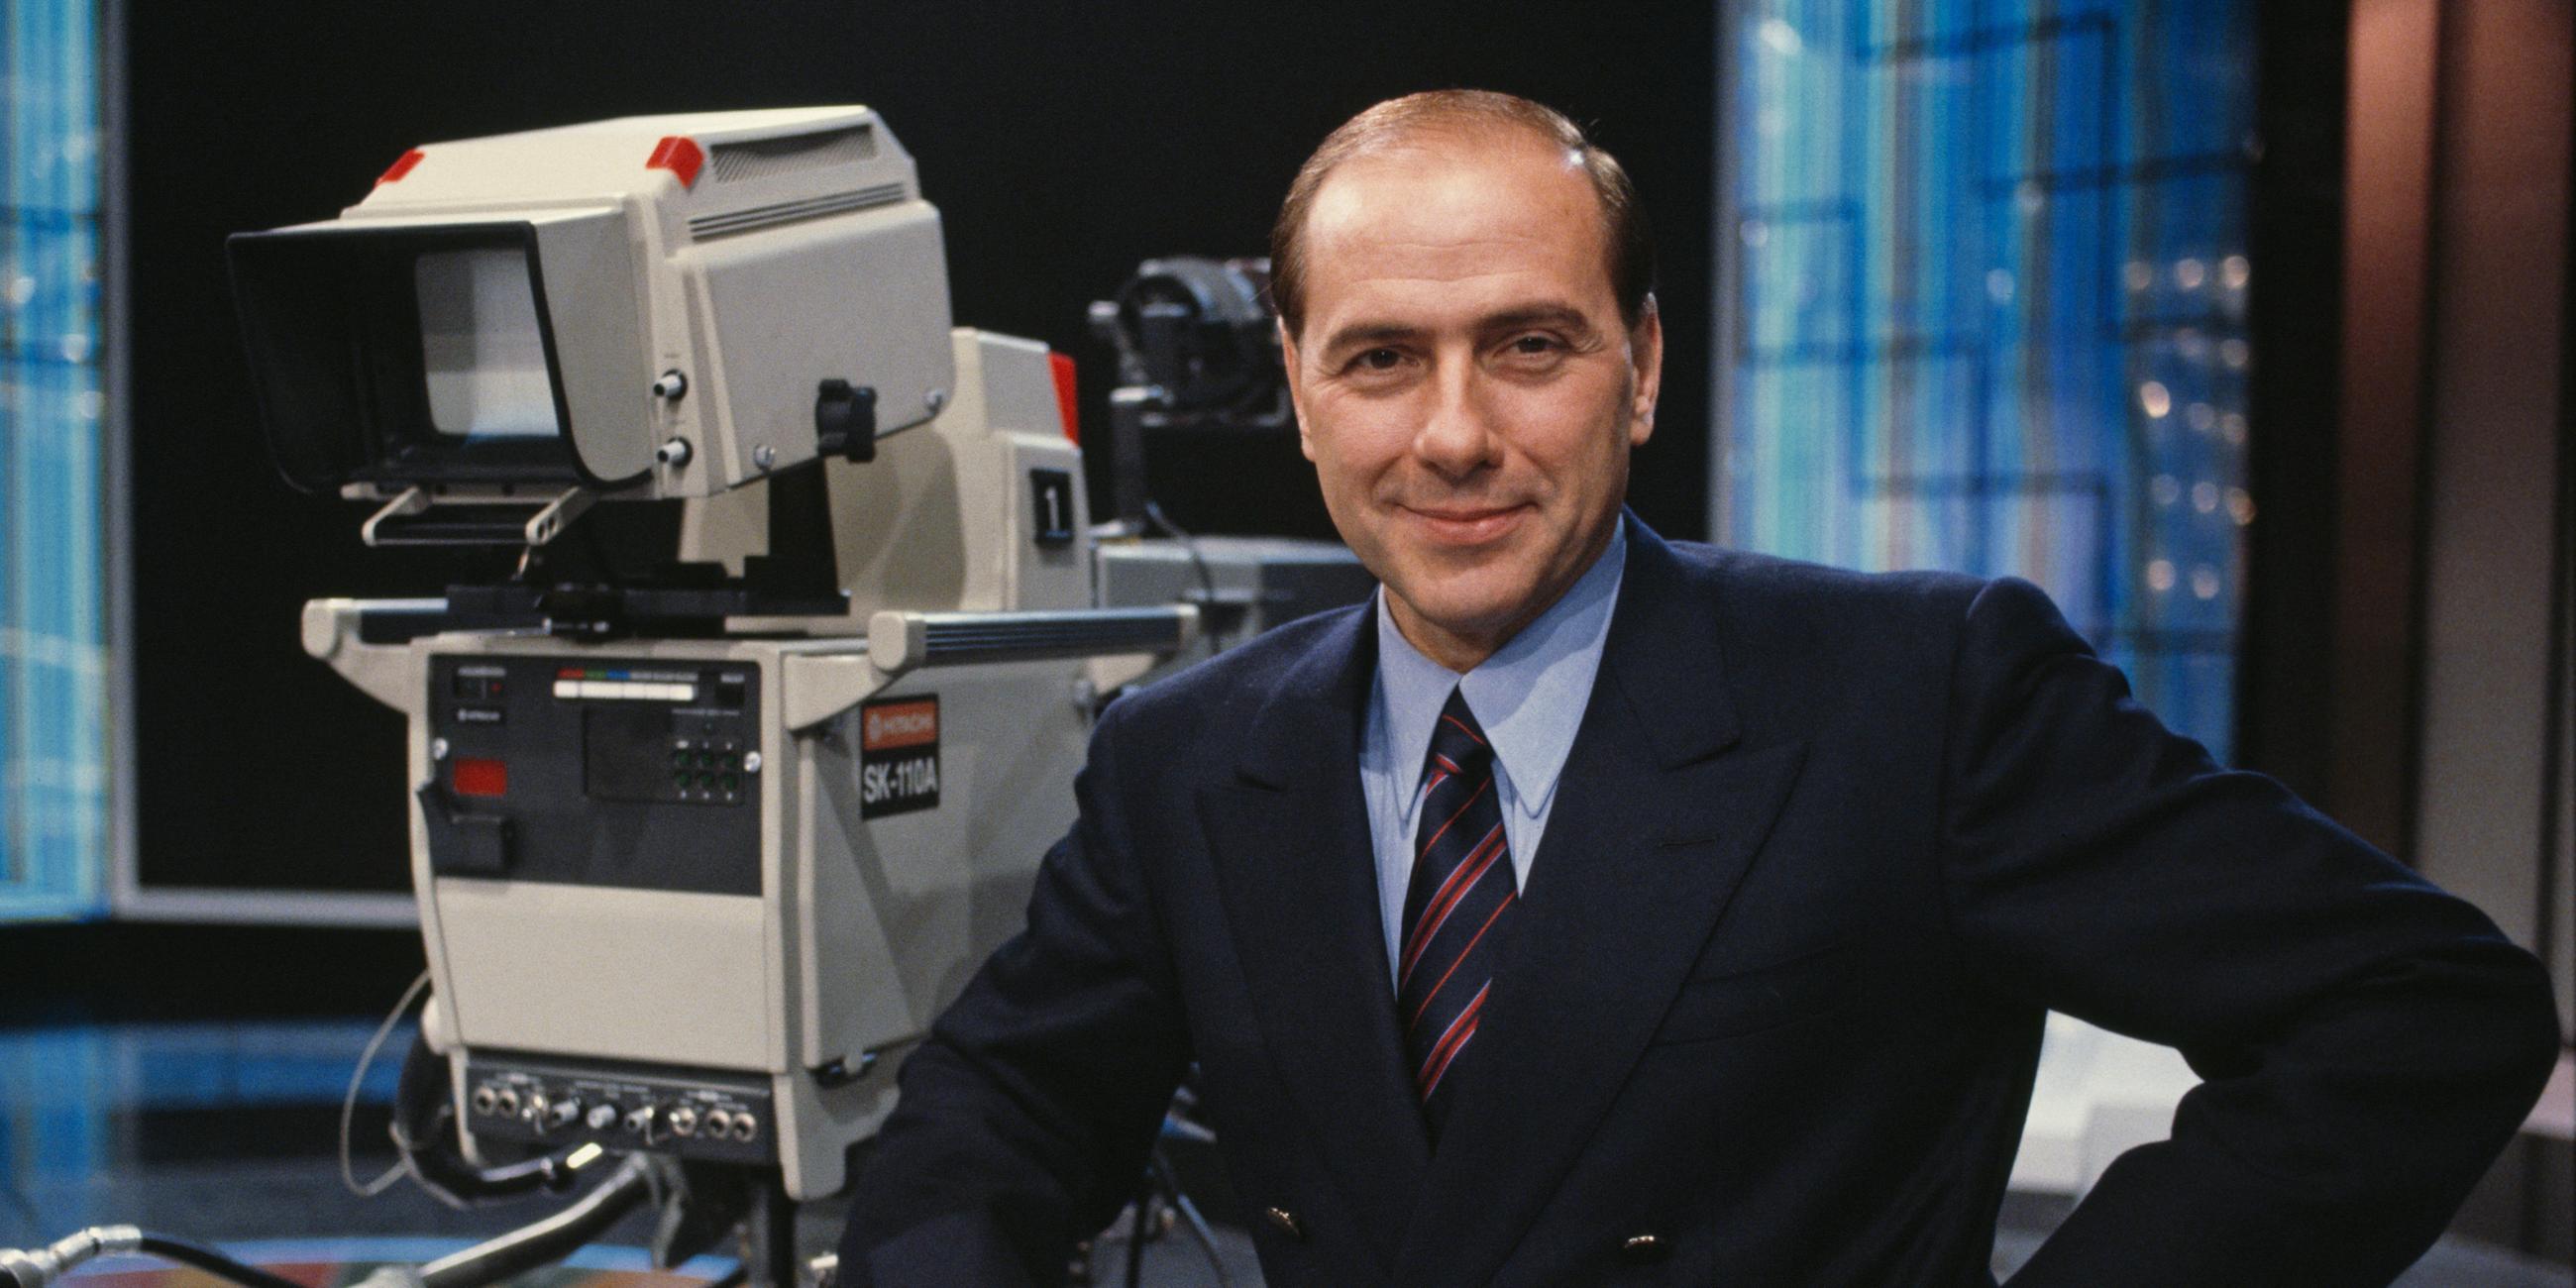 Silvio Berlusconi steht 1986 auf dem Set von Canale 5 in Mailand. Er blickt lächelnd in die Kamera.